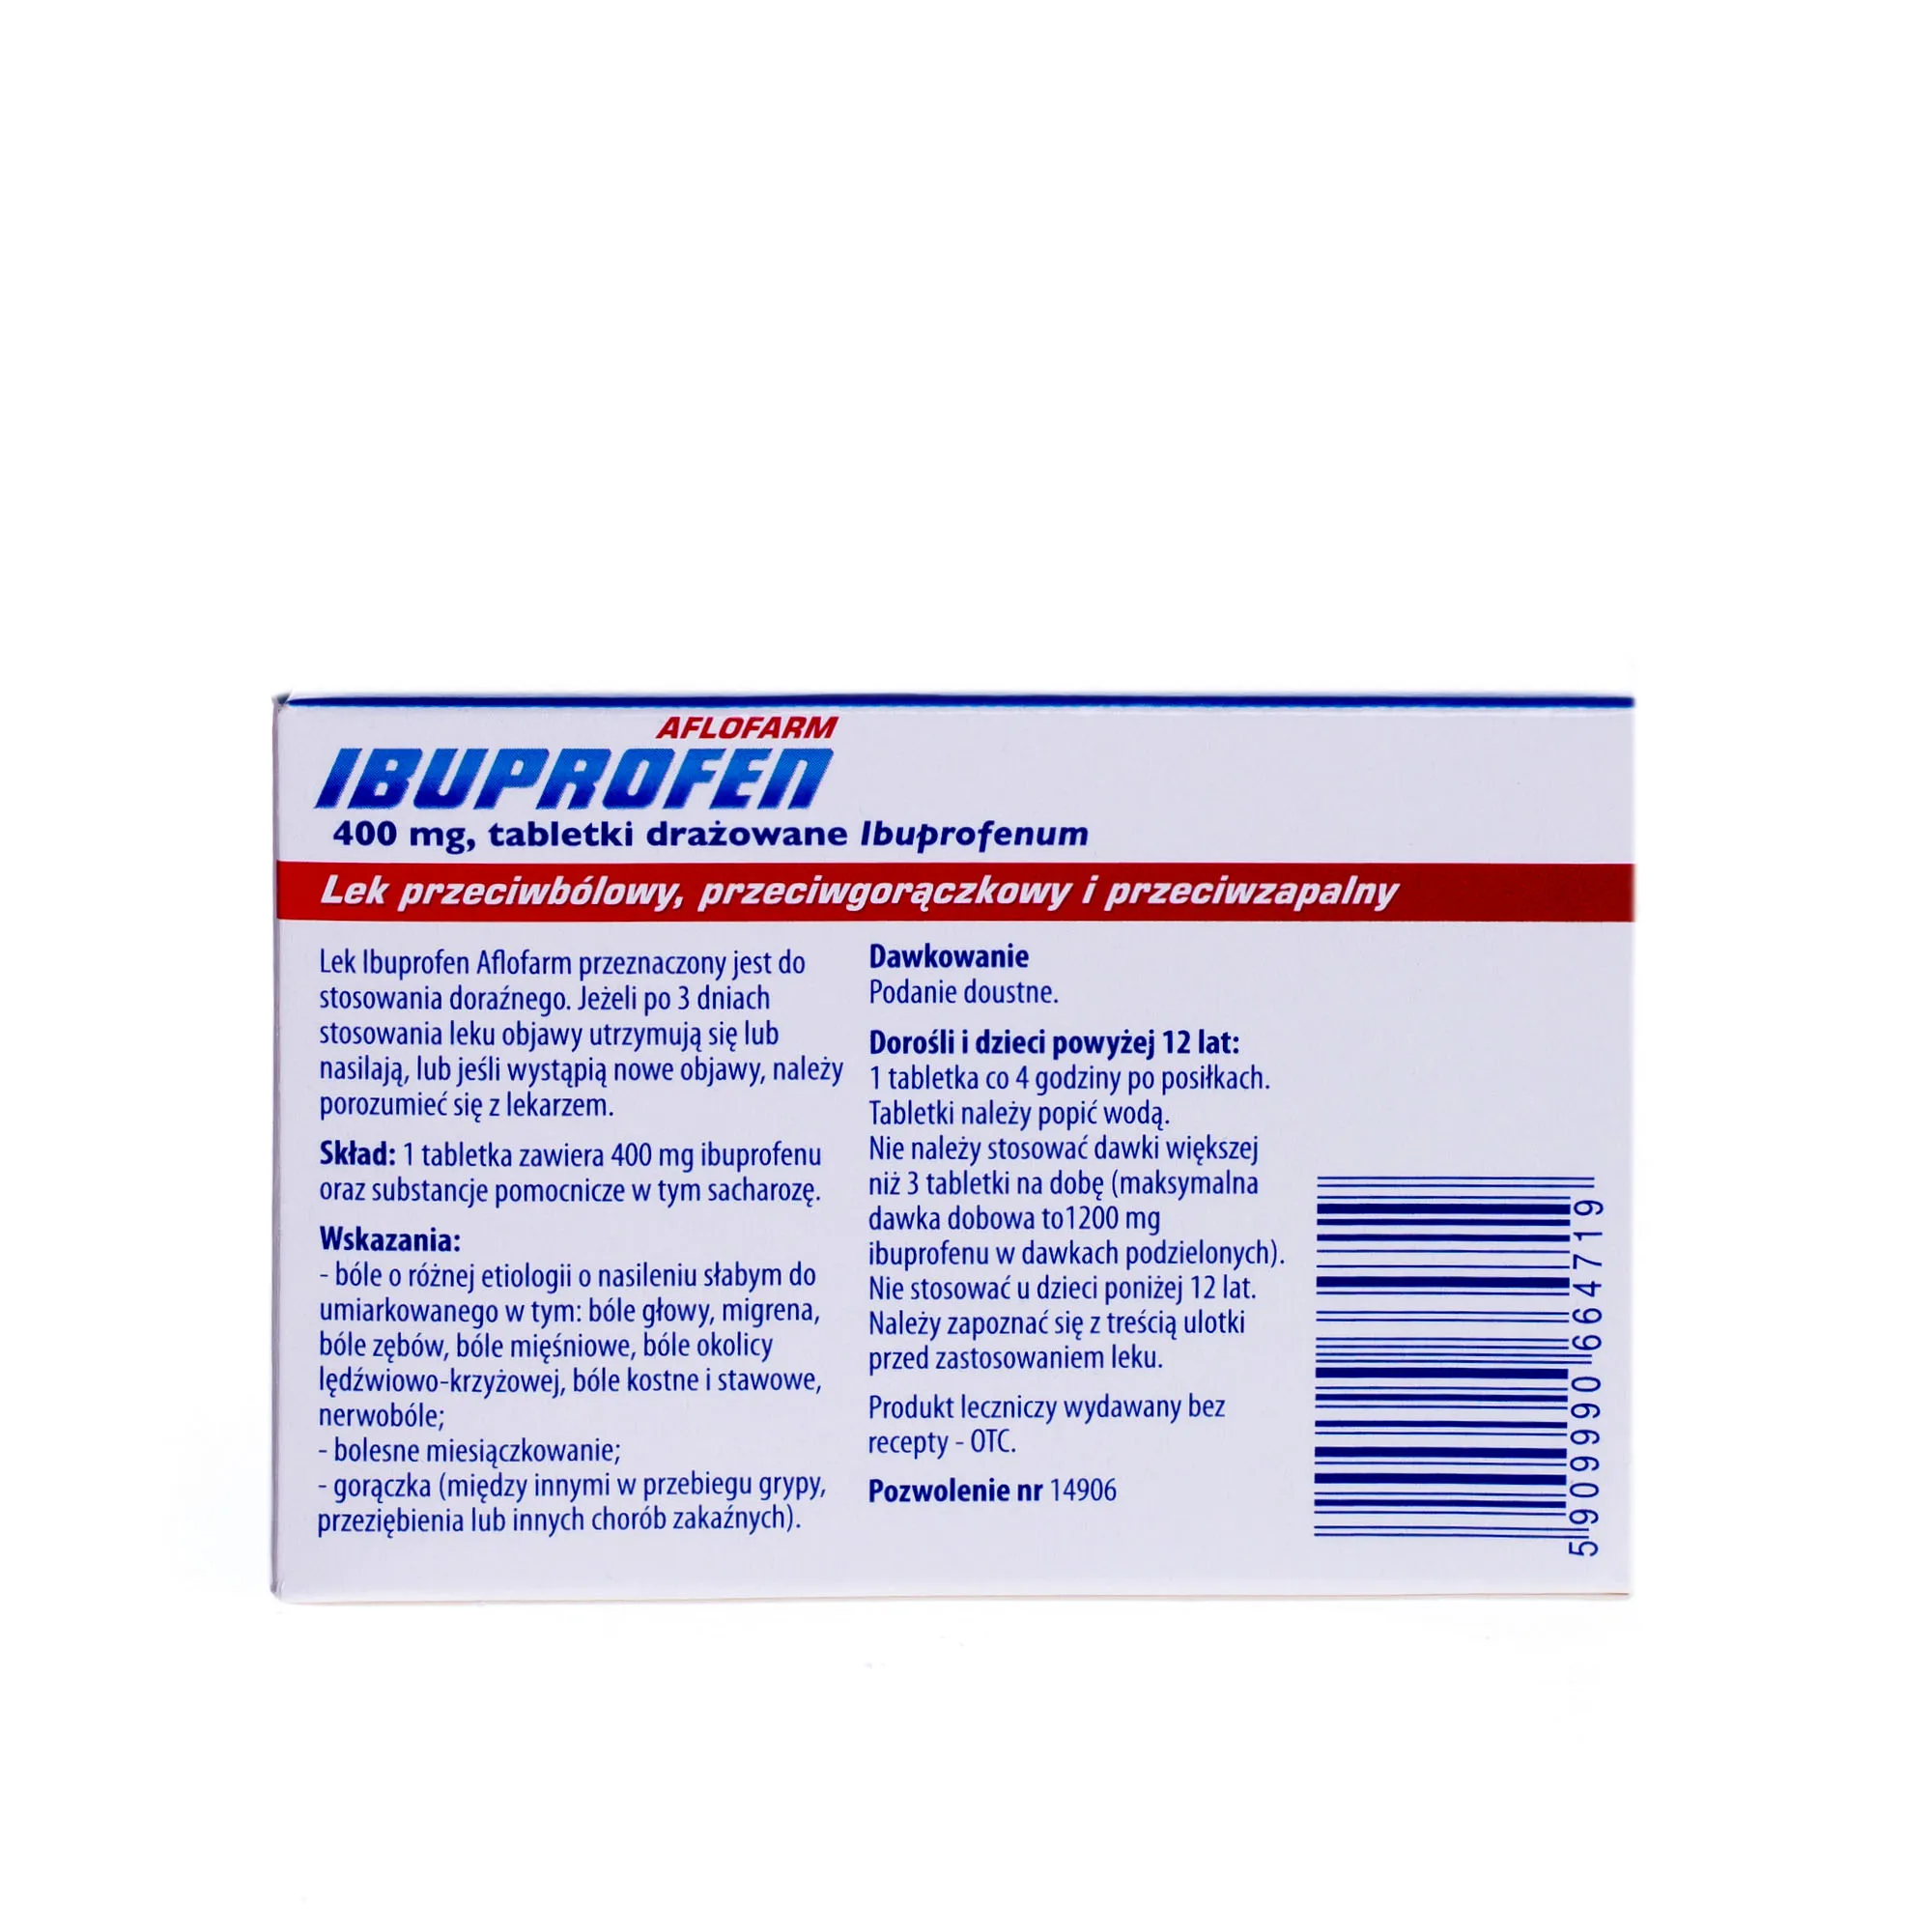 Ibuprofen Aflofarm 400 mg, 20 tabletek drażowanych 